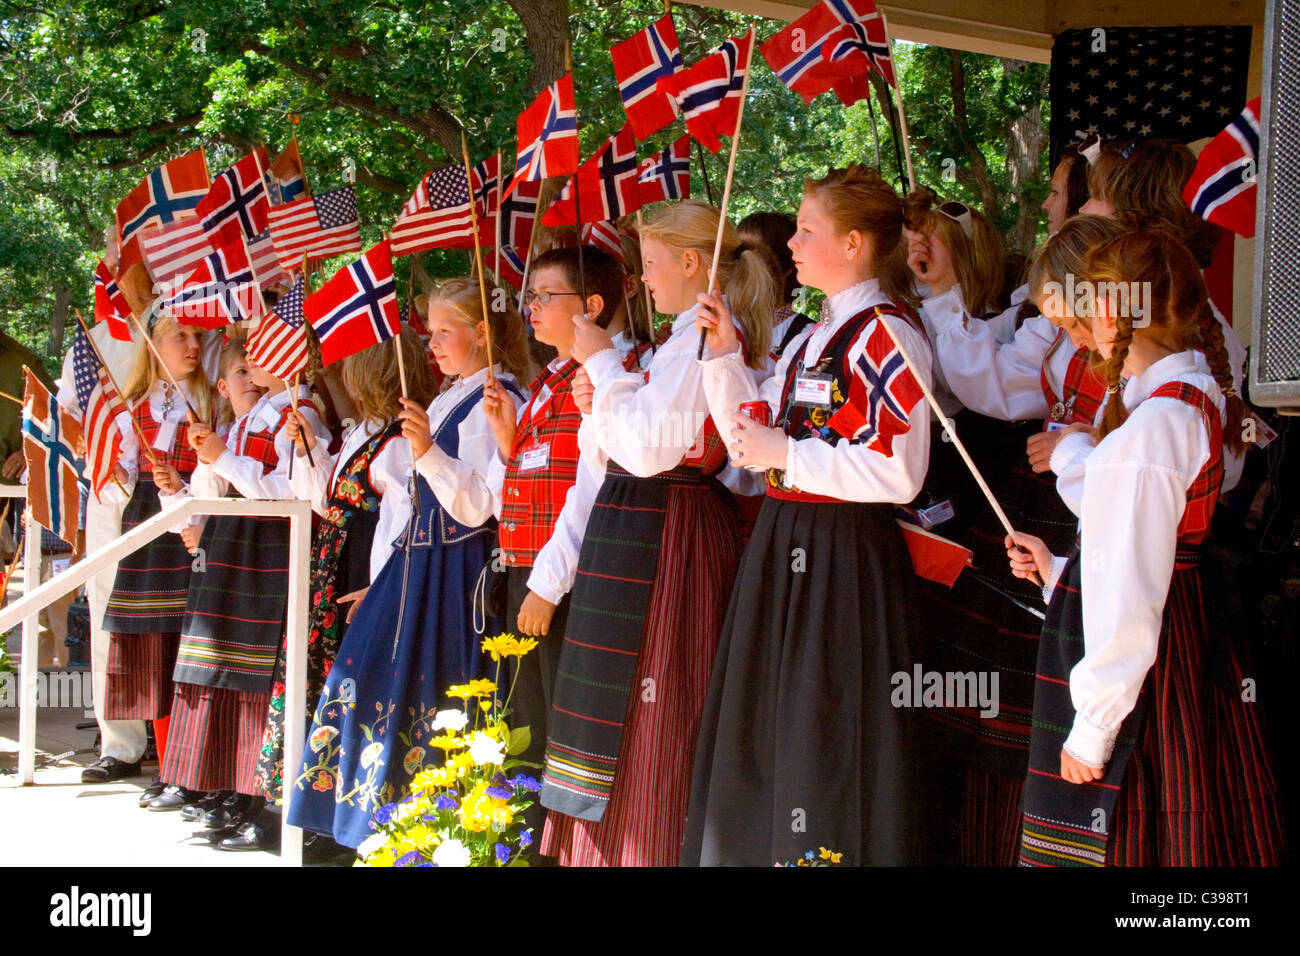 Norwegians reign - The Norwegian American